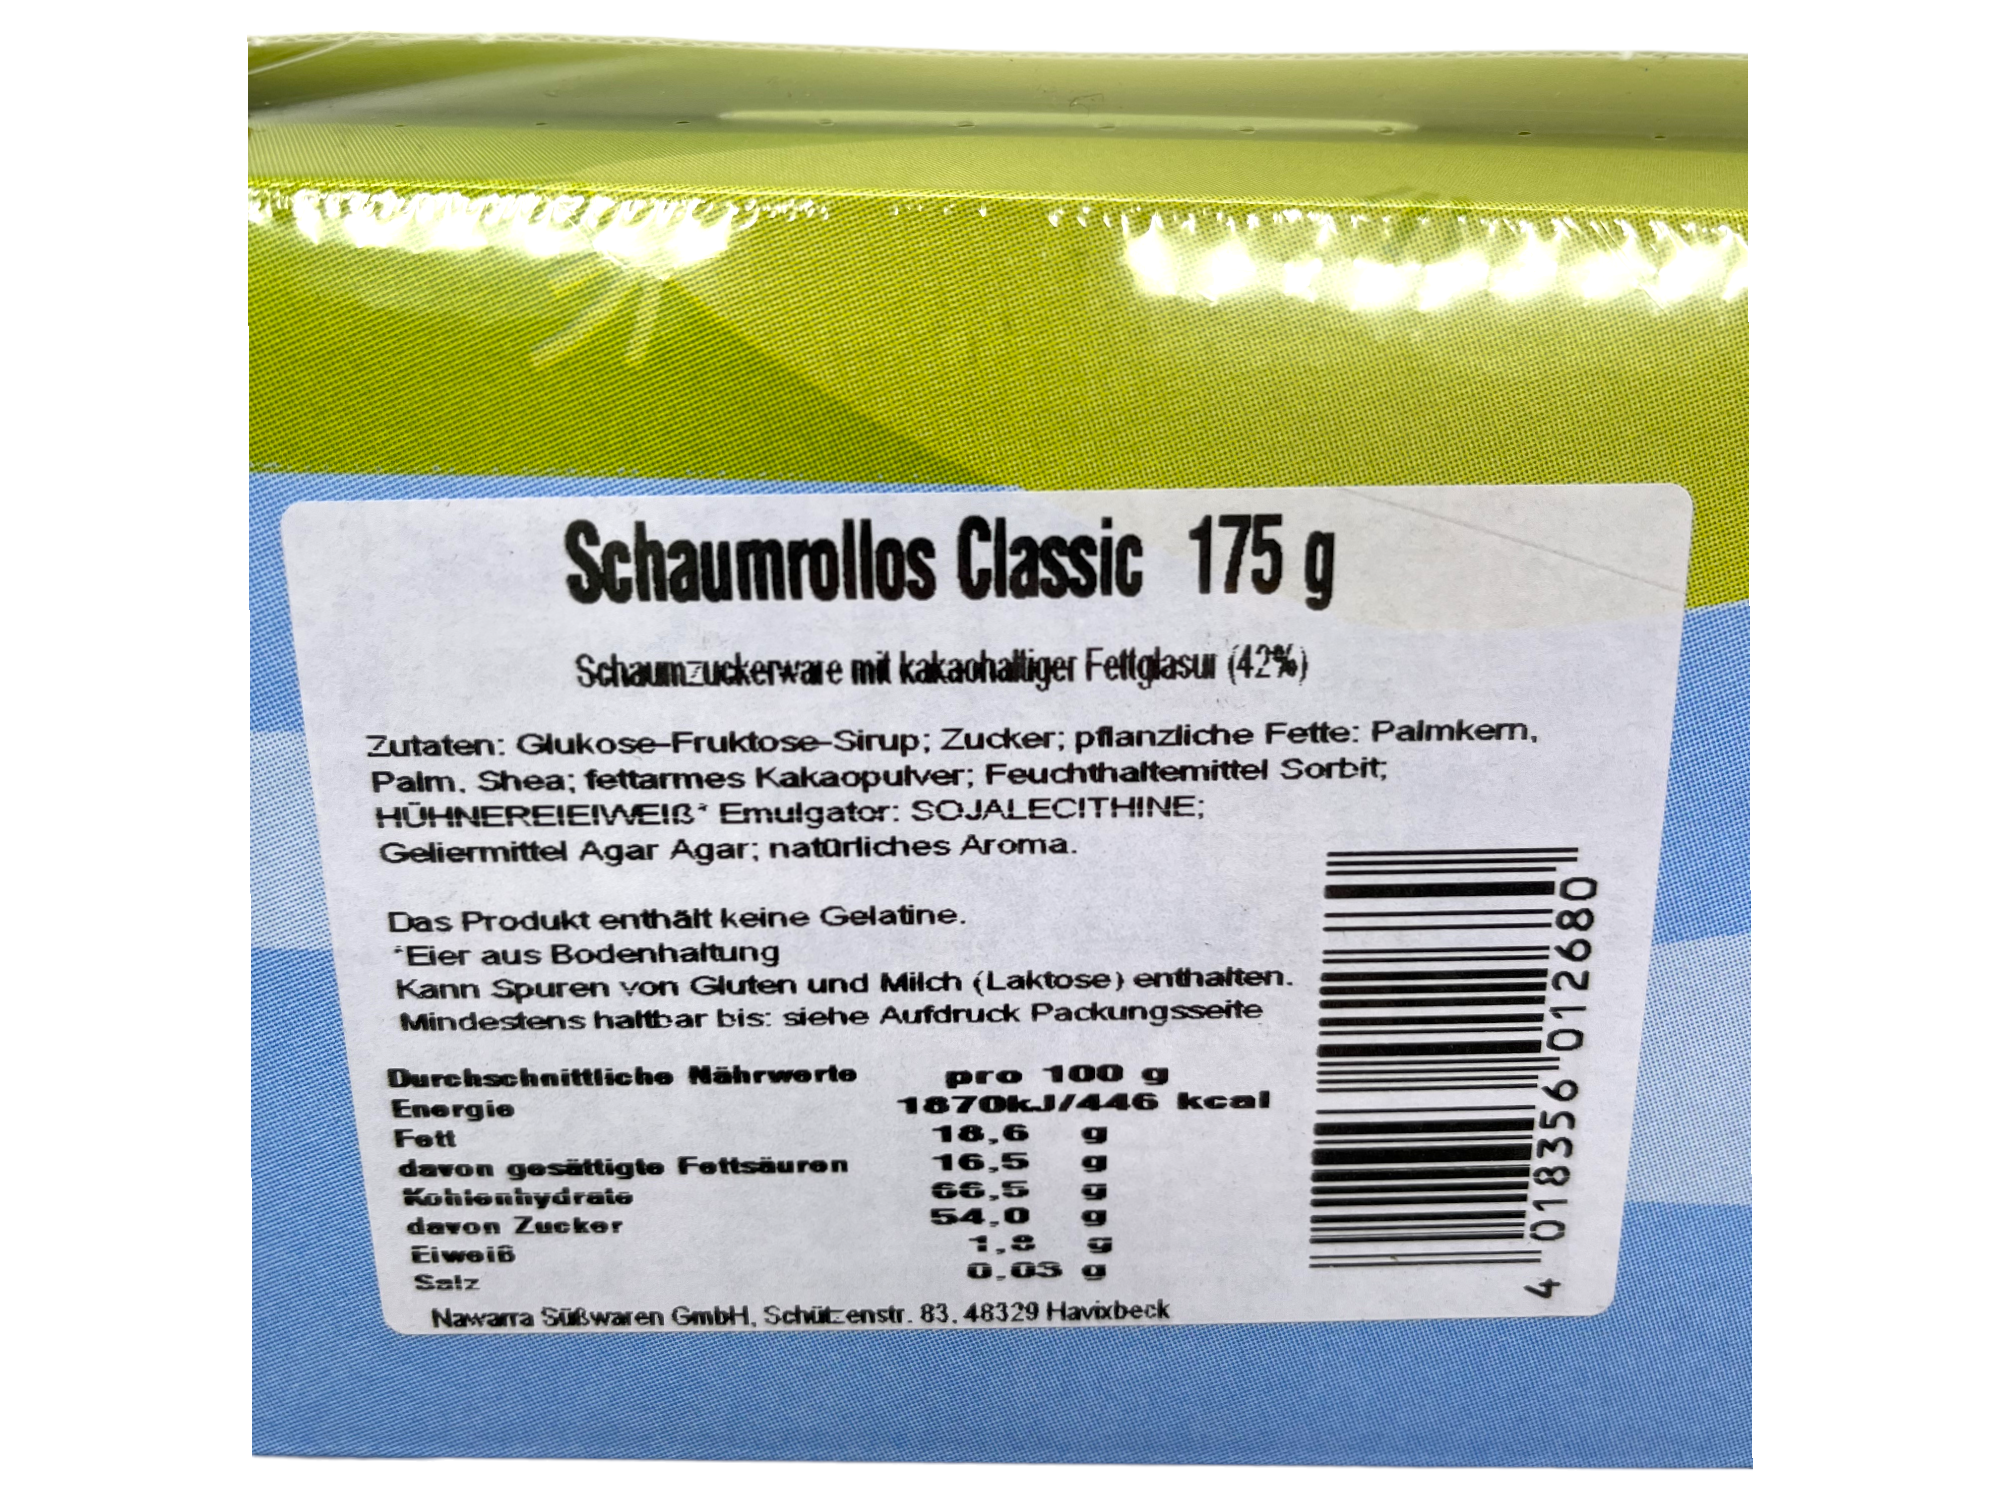 Schaumrollos Classic 175g